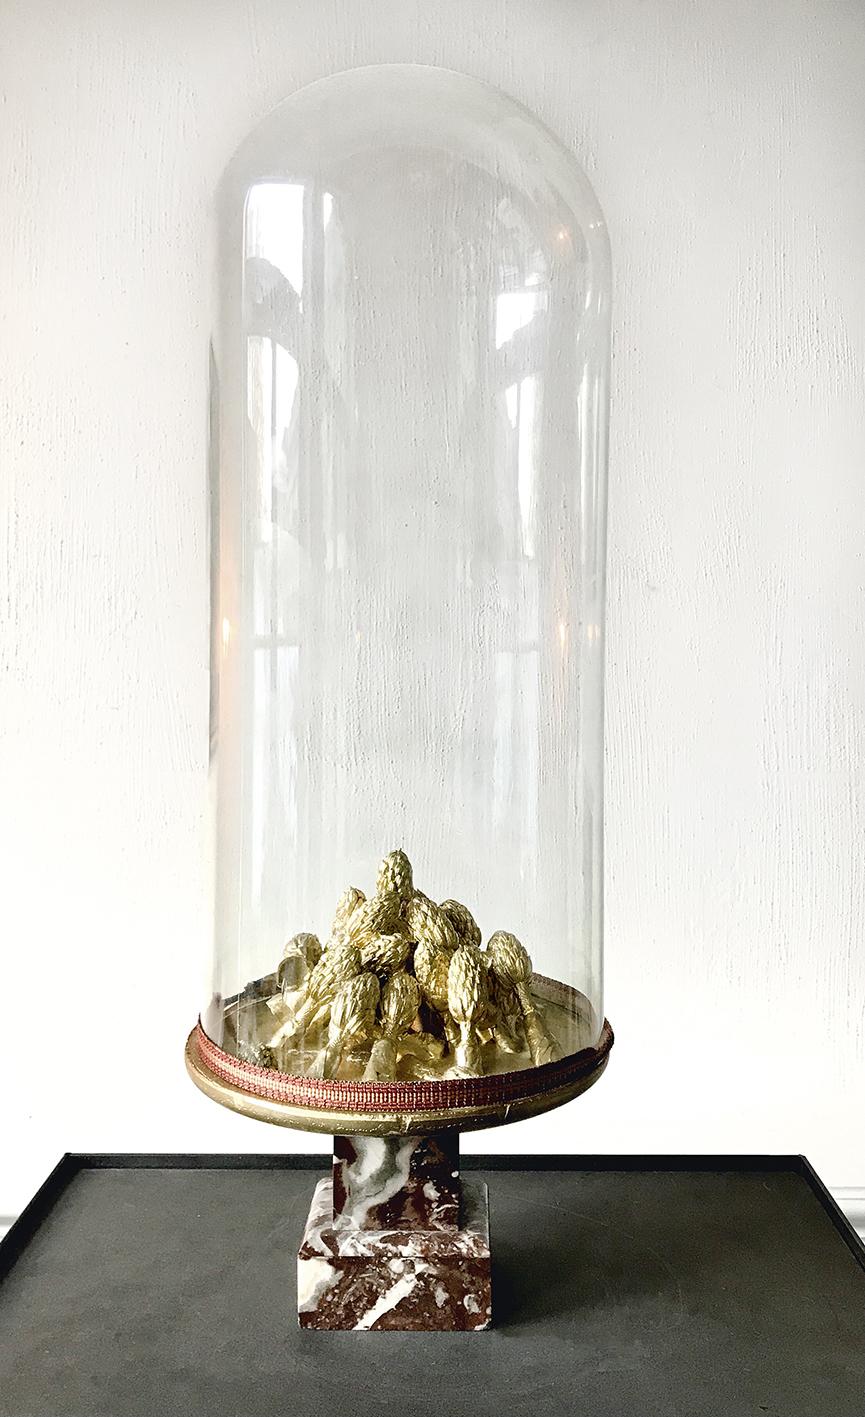 Mireille Robbe, Relique#2, Porselein gips, goud poeder, marmer, stolp, 2017-2020, 22 x 22 x 66 cm